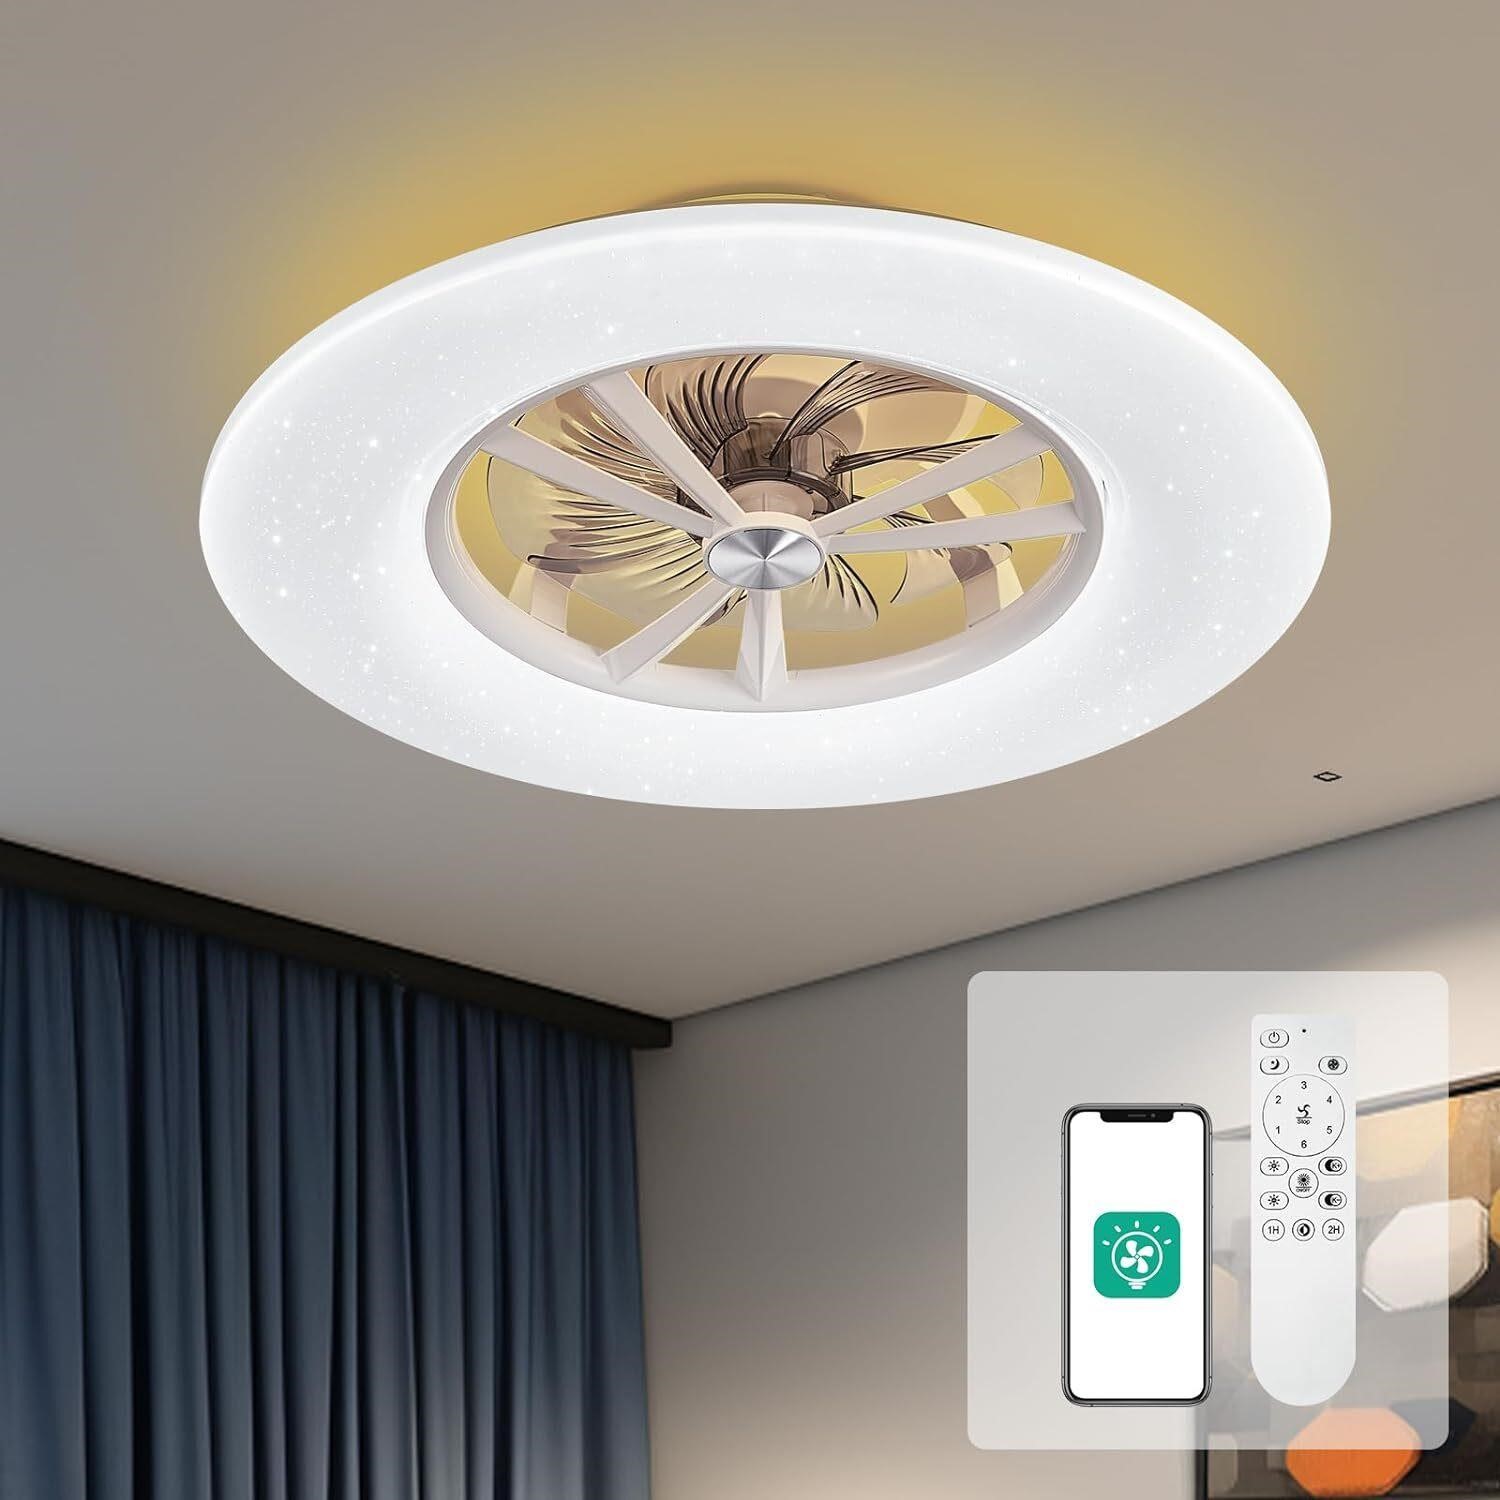 Orison 24' Low Profile Ceiling Fan with Light